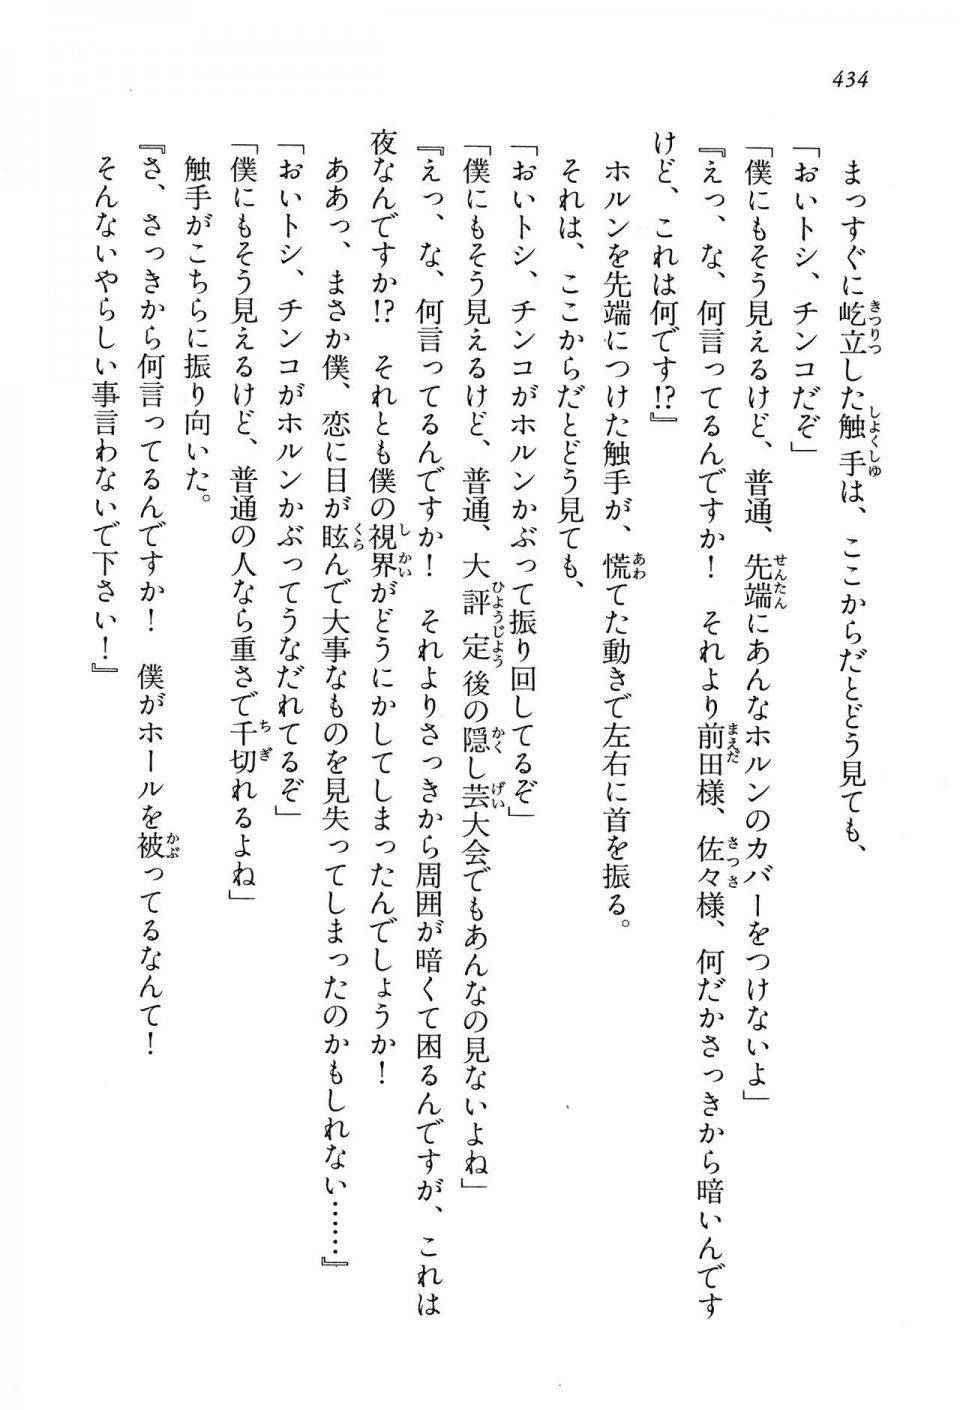 Kyoukai Senjou no Horizon LN Vol 13(6A) - Photo #434